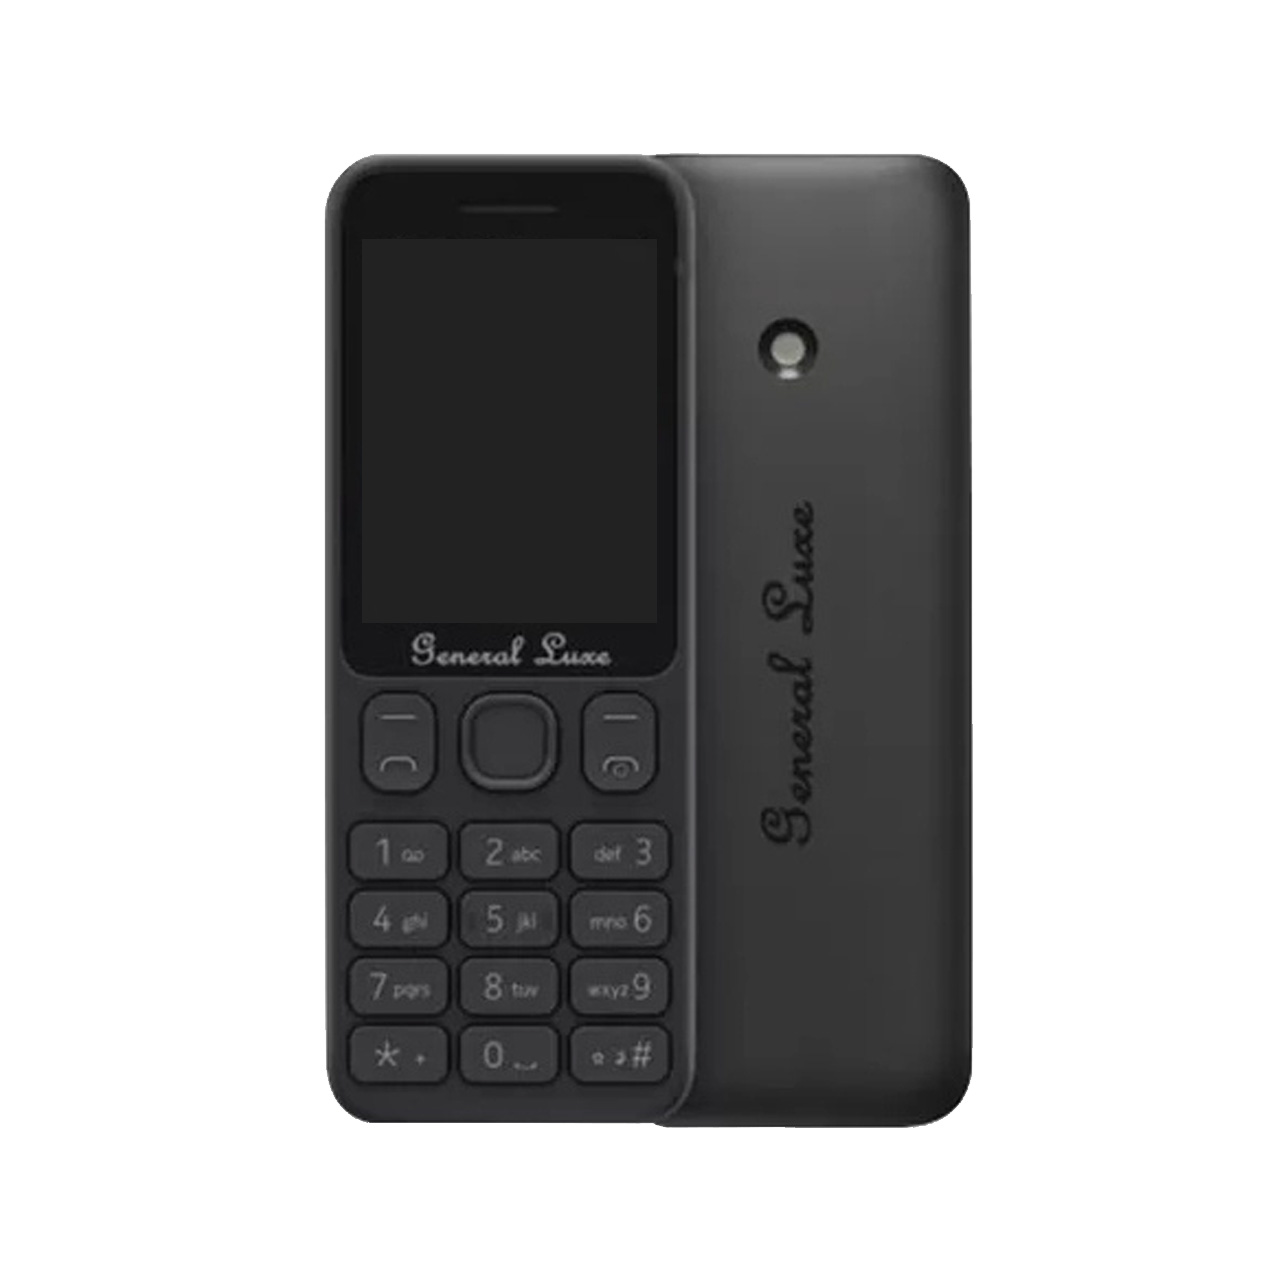 گوشی موبایل جی ال ایکس مدل General Luxe 125 دو سیم کارت